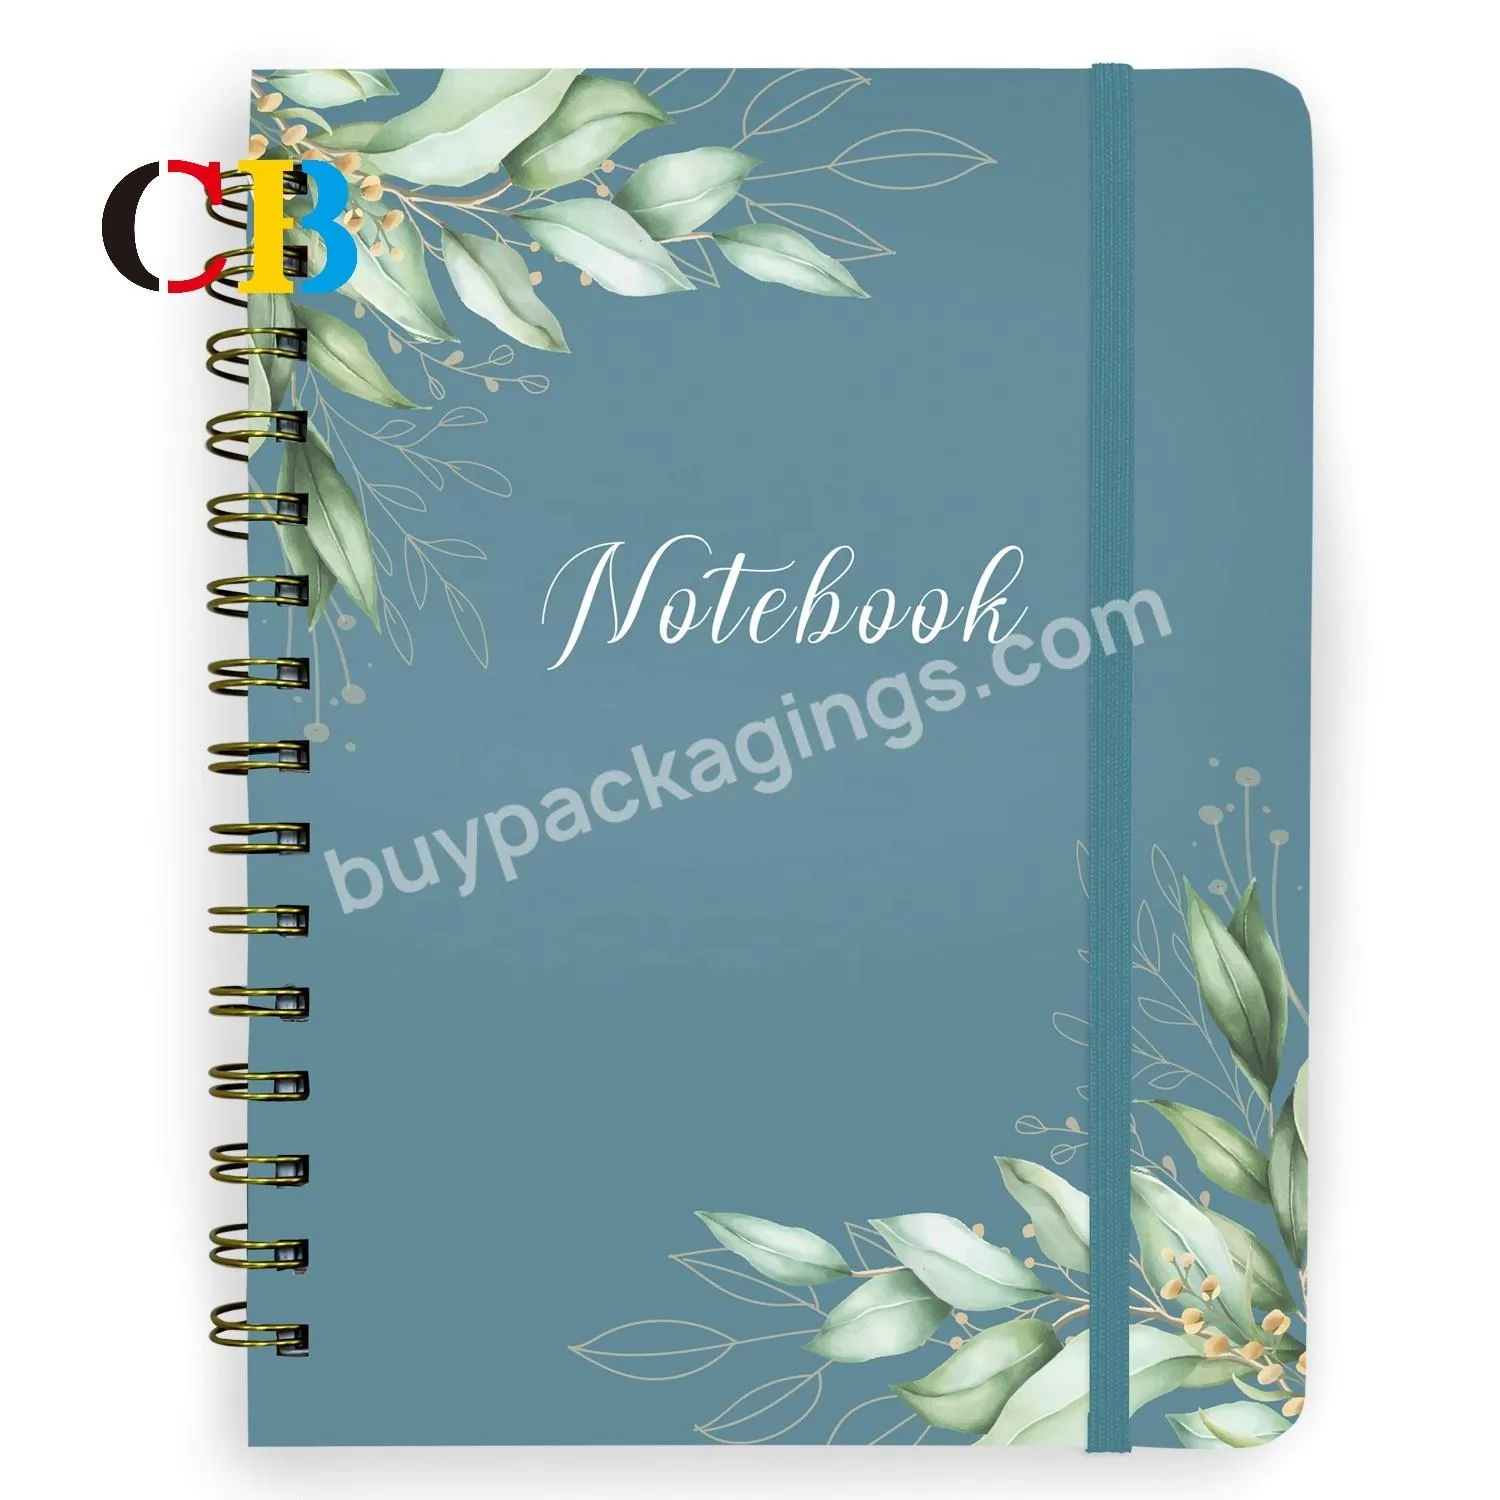 Hardbound Notebooks Notebook Accessories Rewritable Notebook - Buy Hardbound Notebooks,Notebook Accessories,Rewritable Notebook.